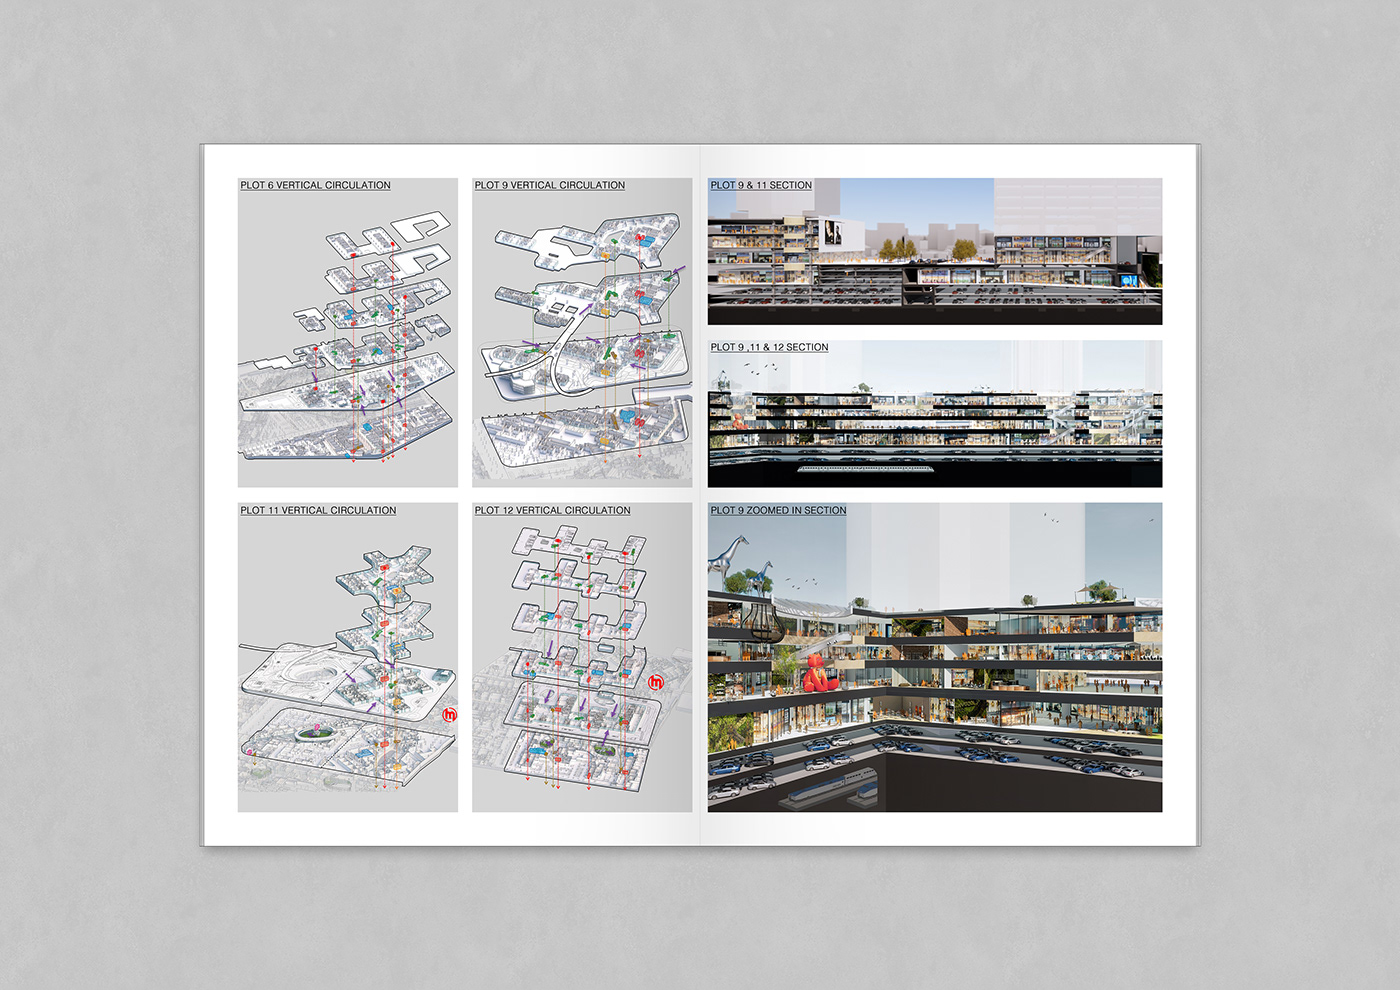 architecture folio portfolio rendering design interior design  Layout modern Render visualization